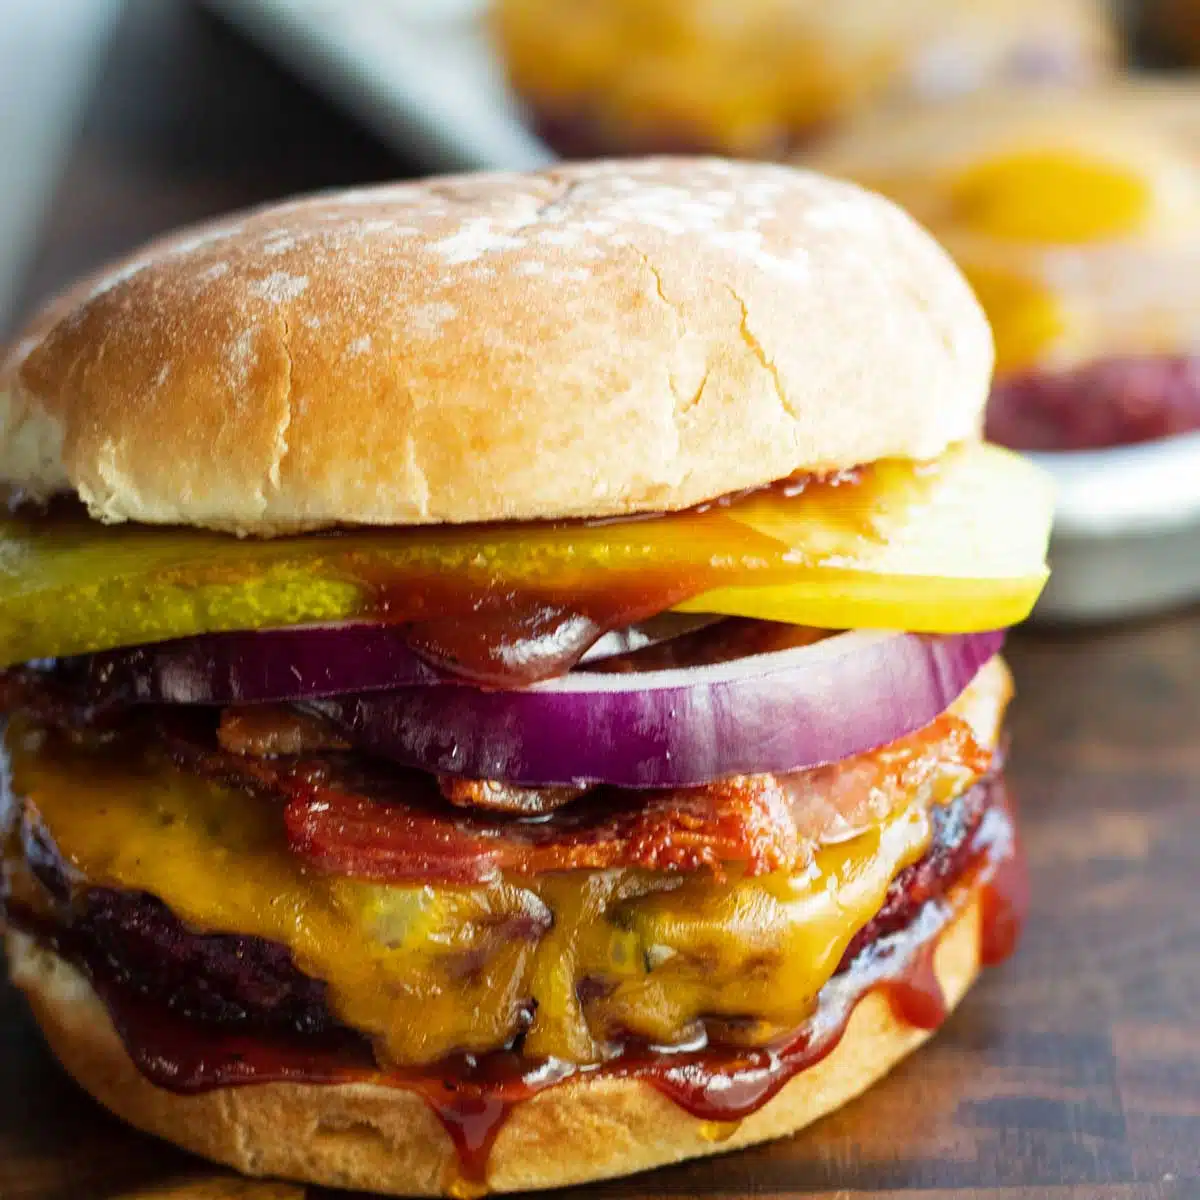 Uzený hamburger na opečené housce s kořením a podnosem s hamburgery v pozadí.